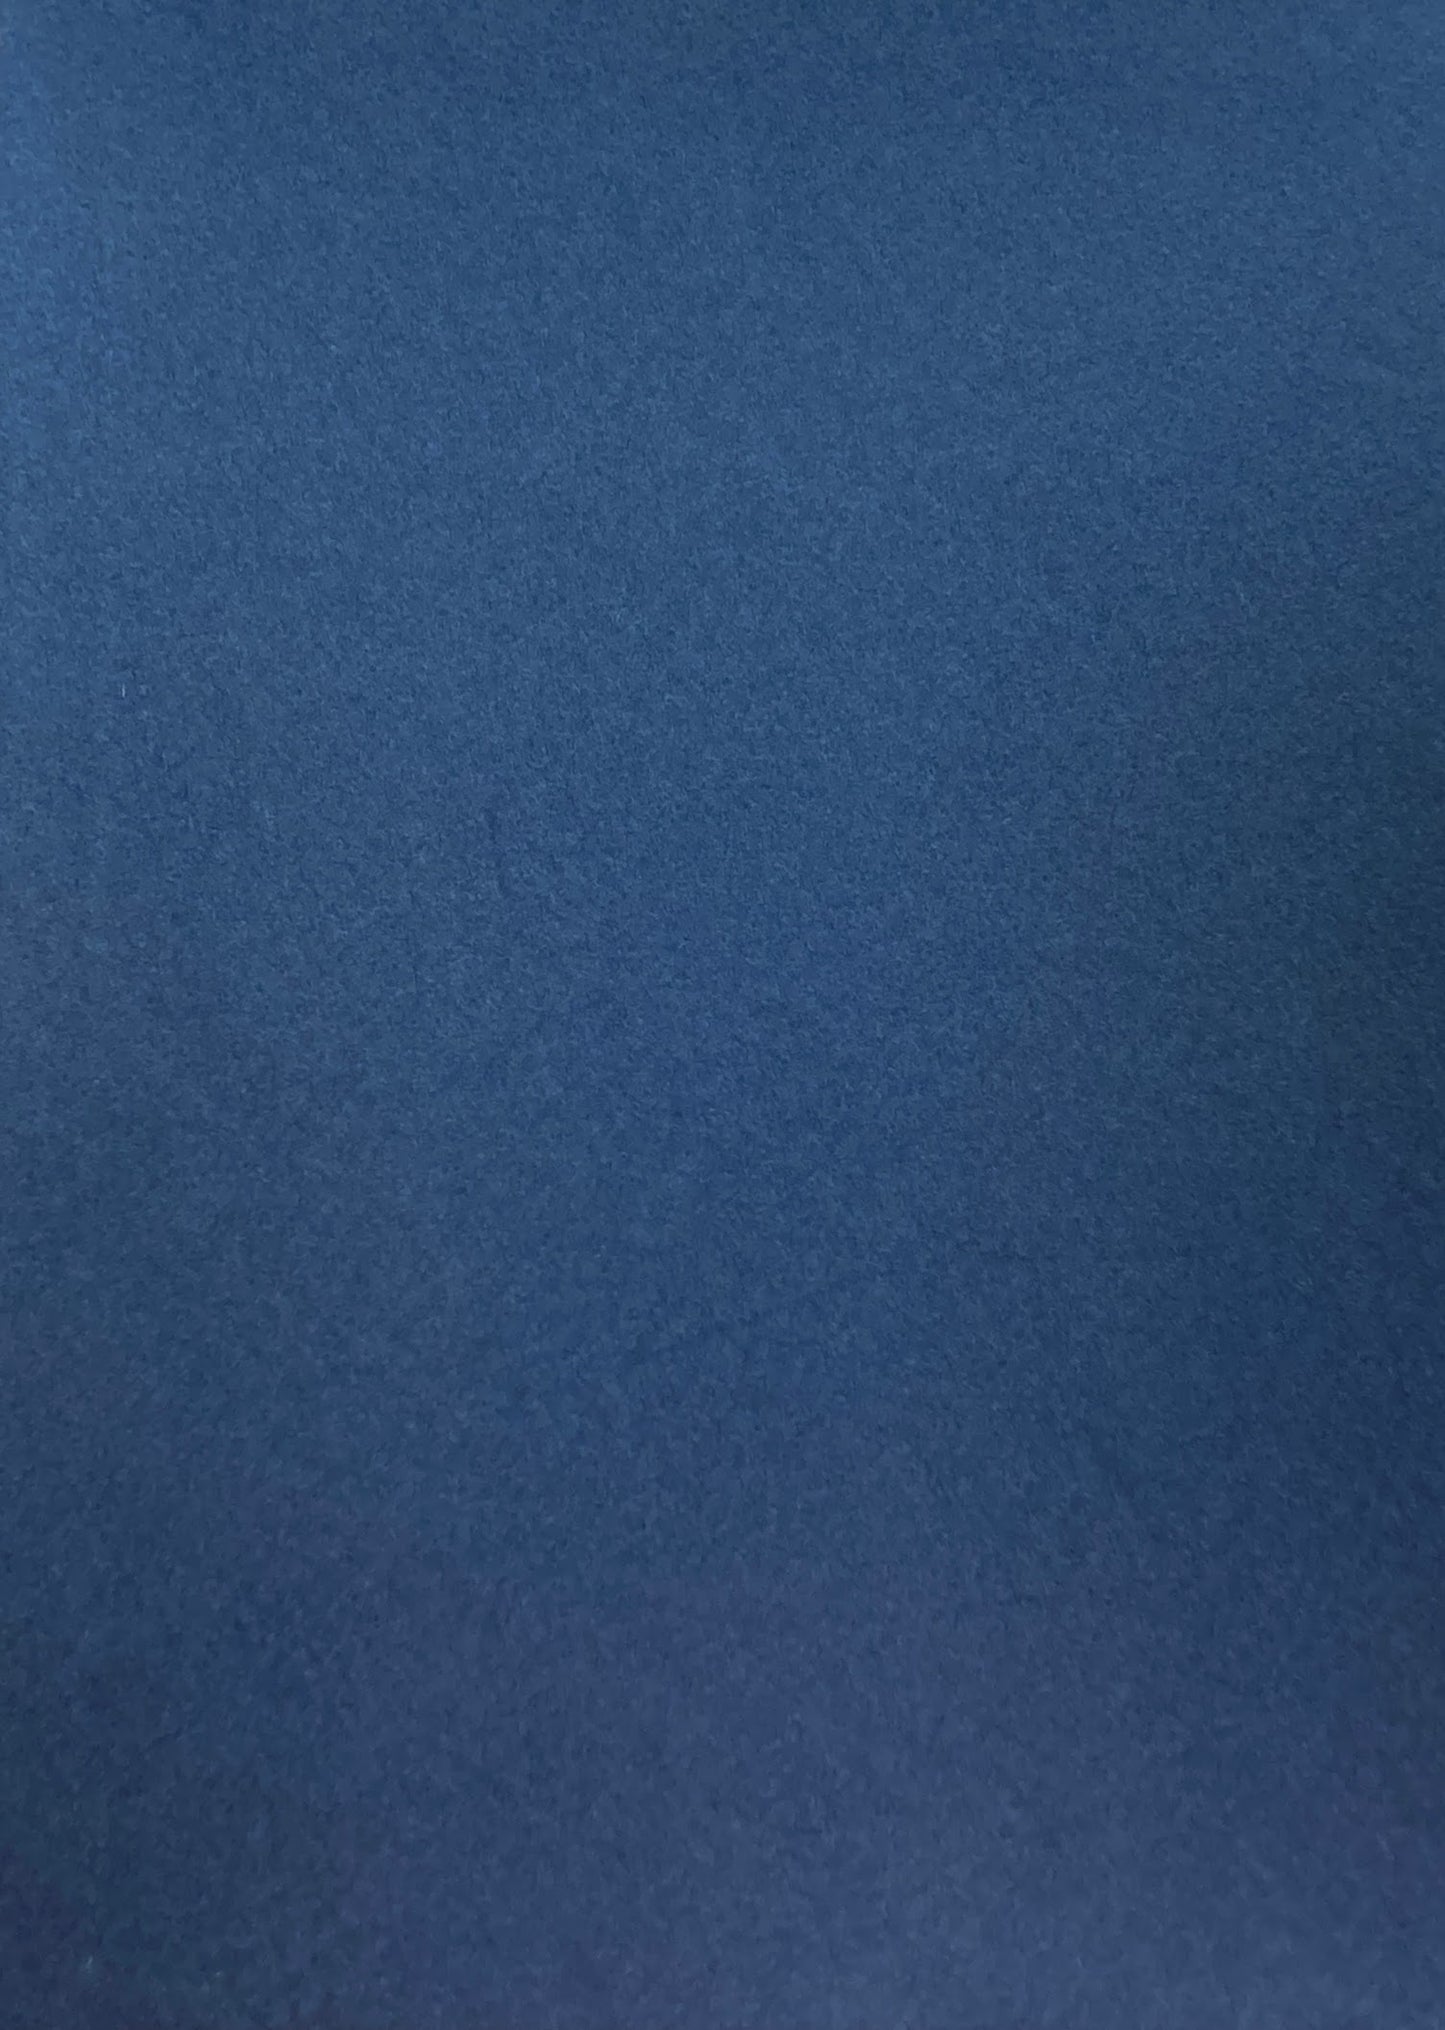 インターテクスチュアリティ　視ることの織物　長野五郎 1971-2011　特装版350部限定　マルチプル付